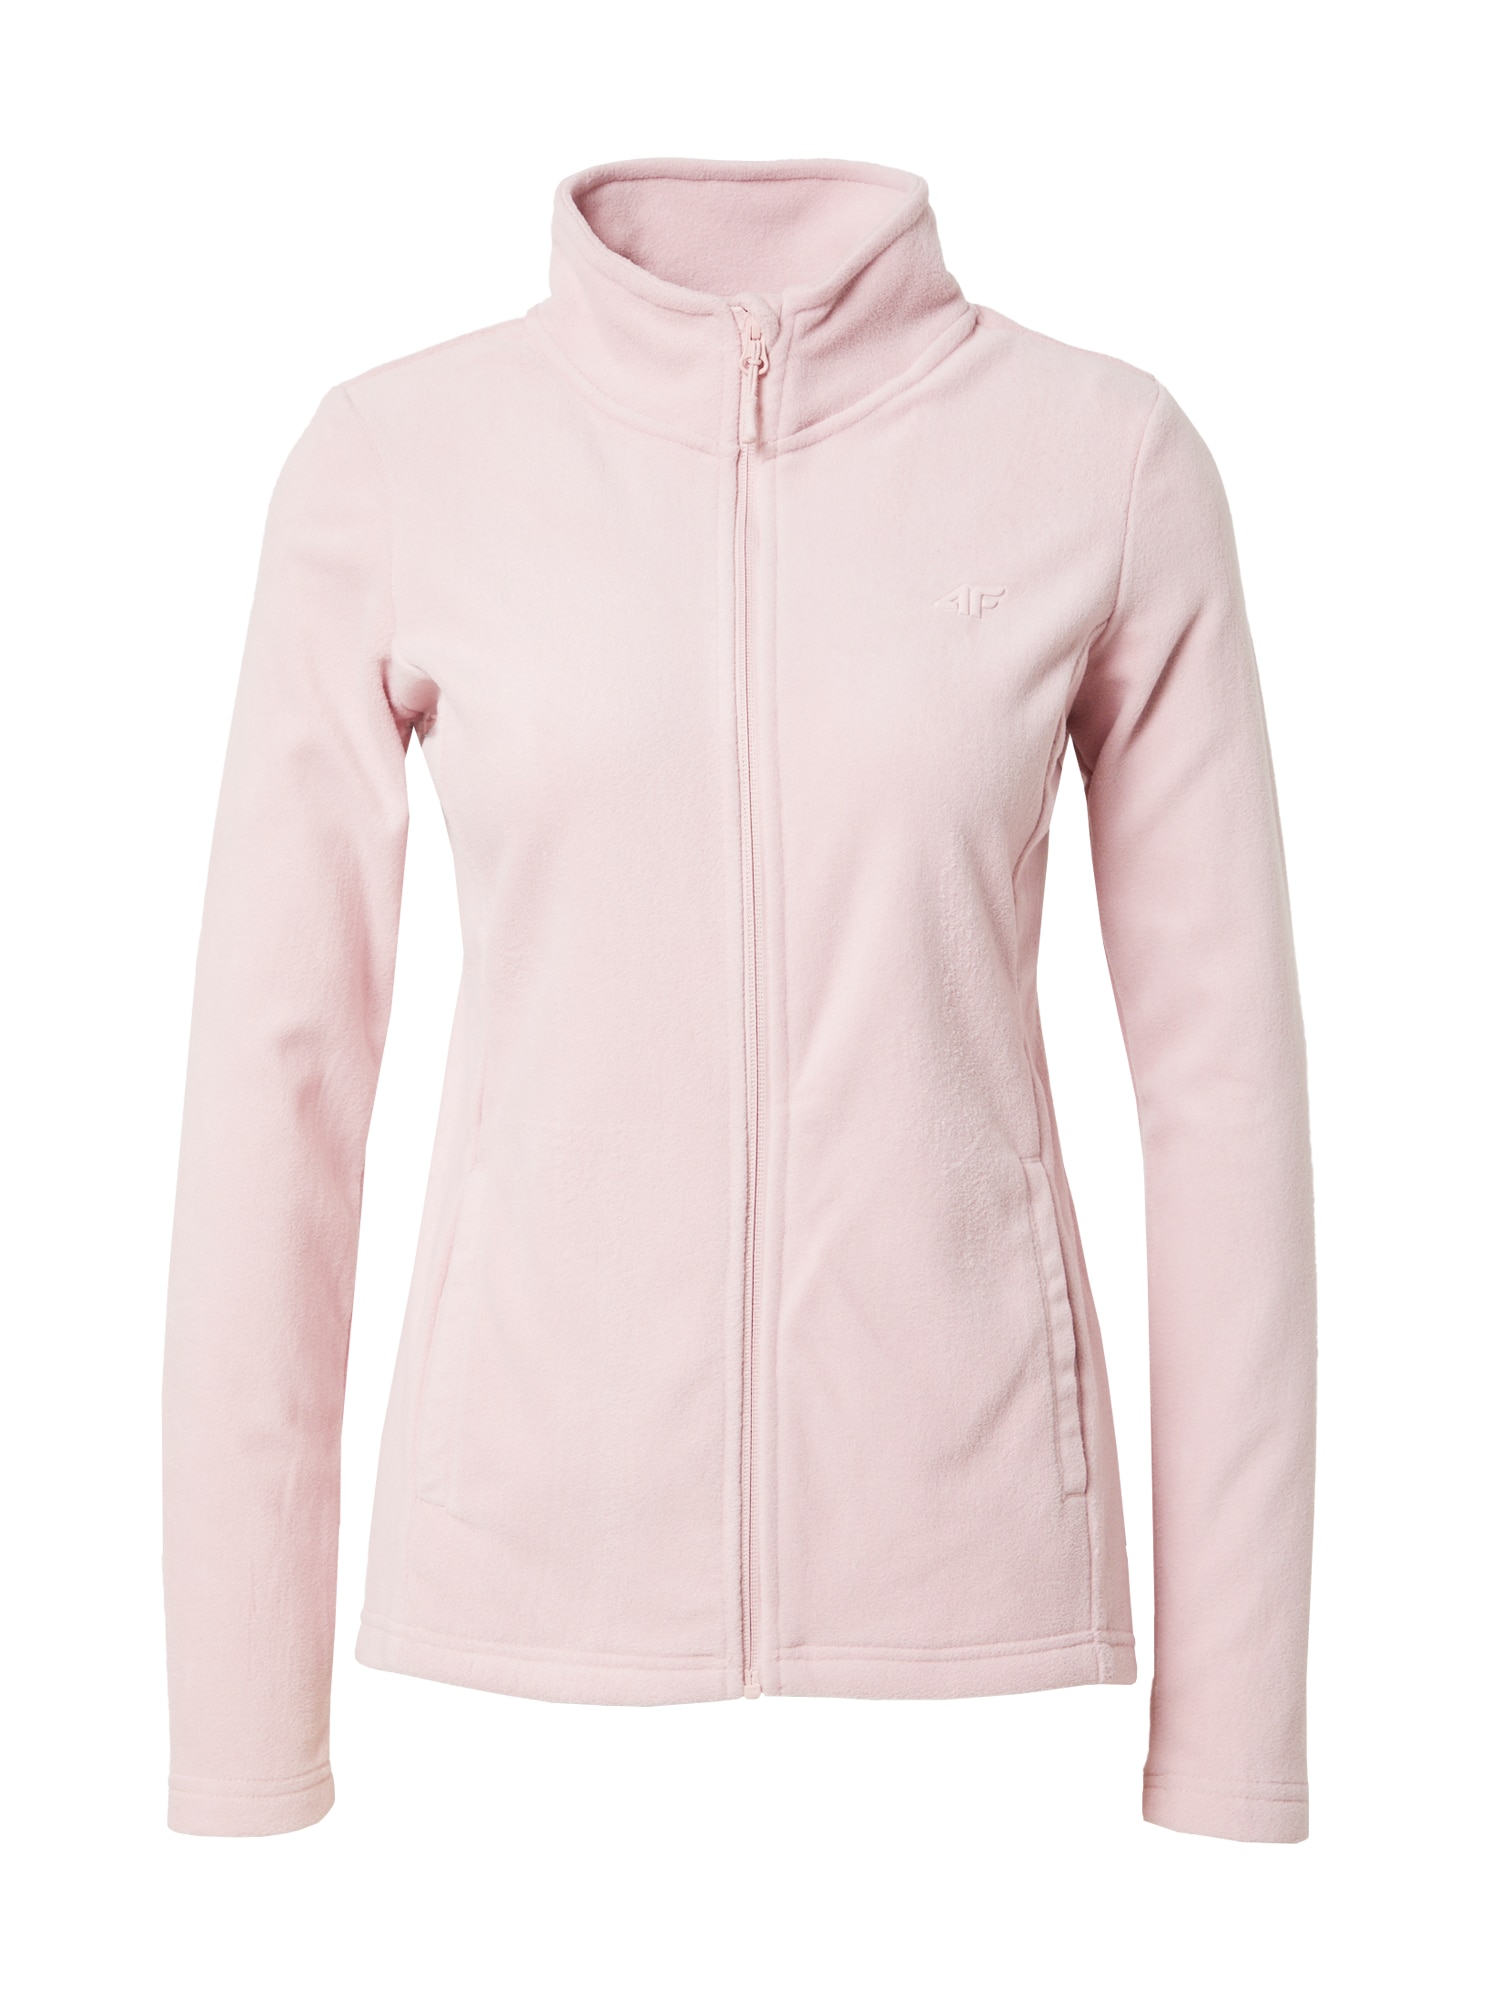 4F Jachetă  fleece funcțională  roz